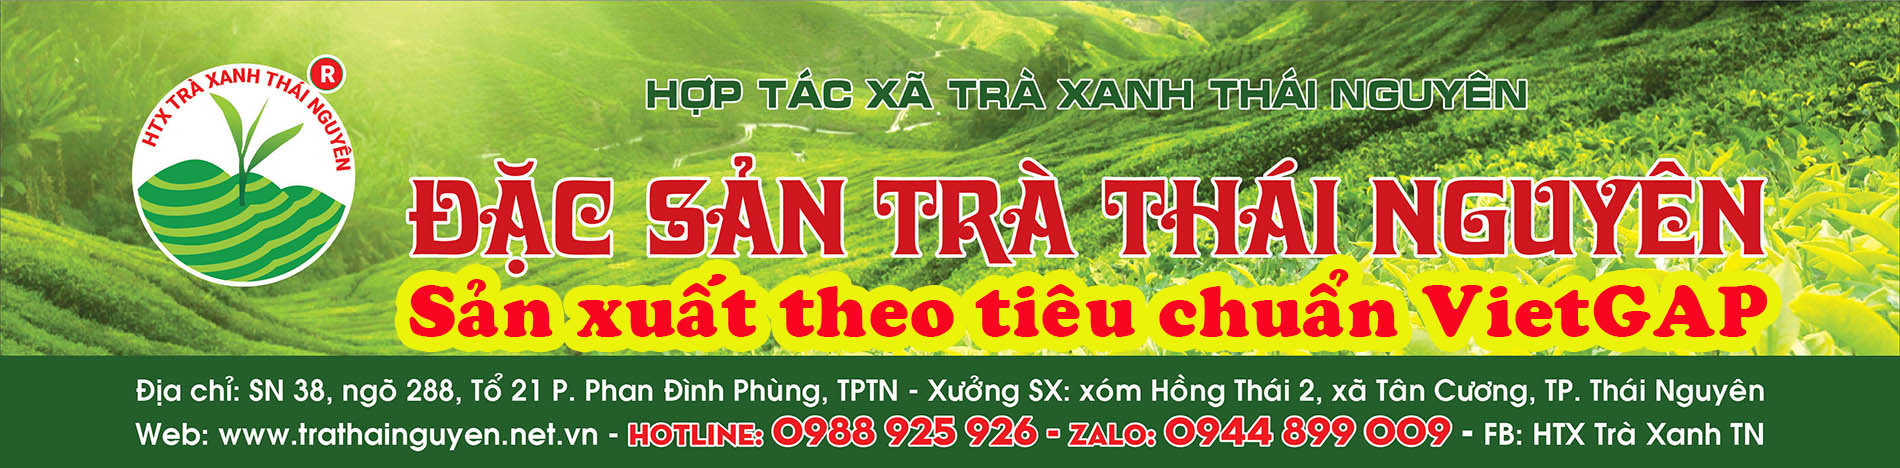 Chè Thái Nguyên - Hương vị tinh túy của vùng đất trà Việt